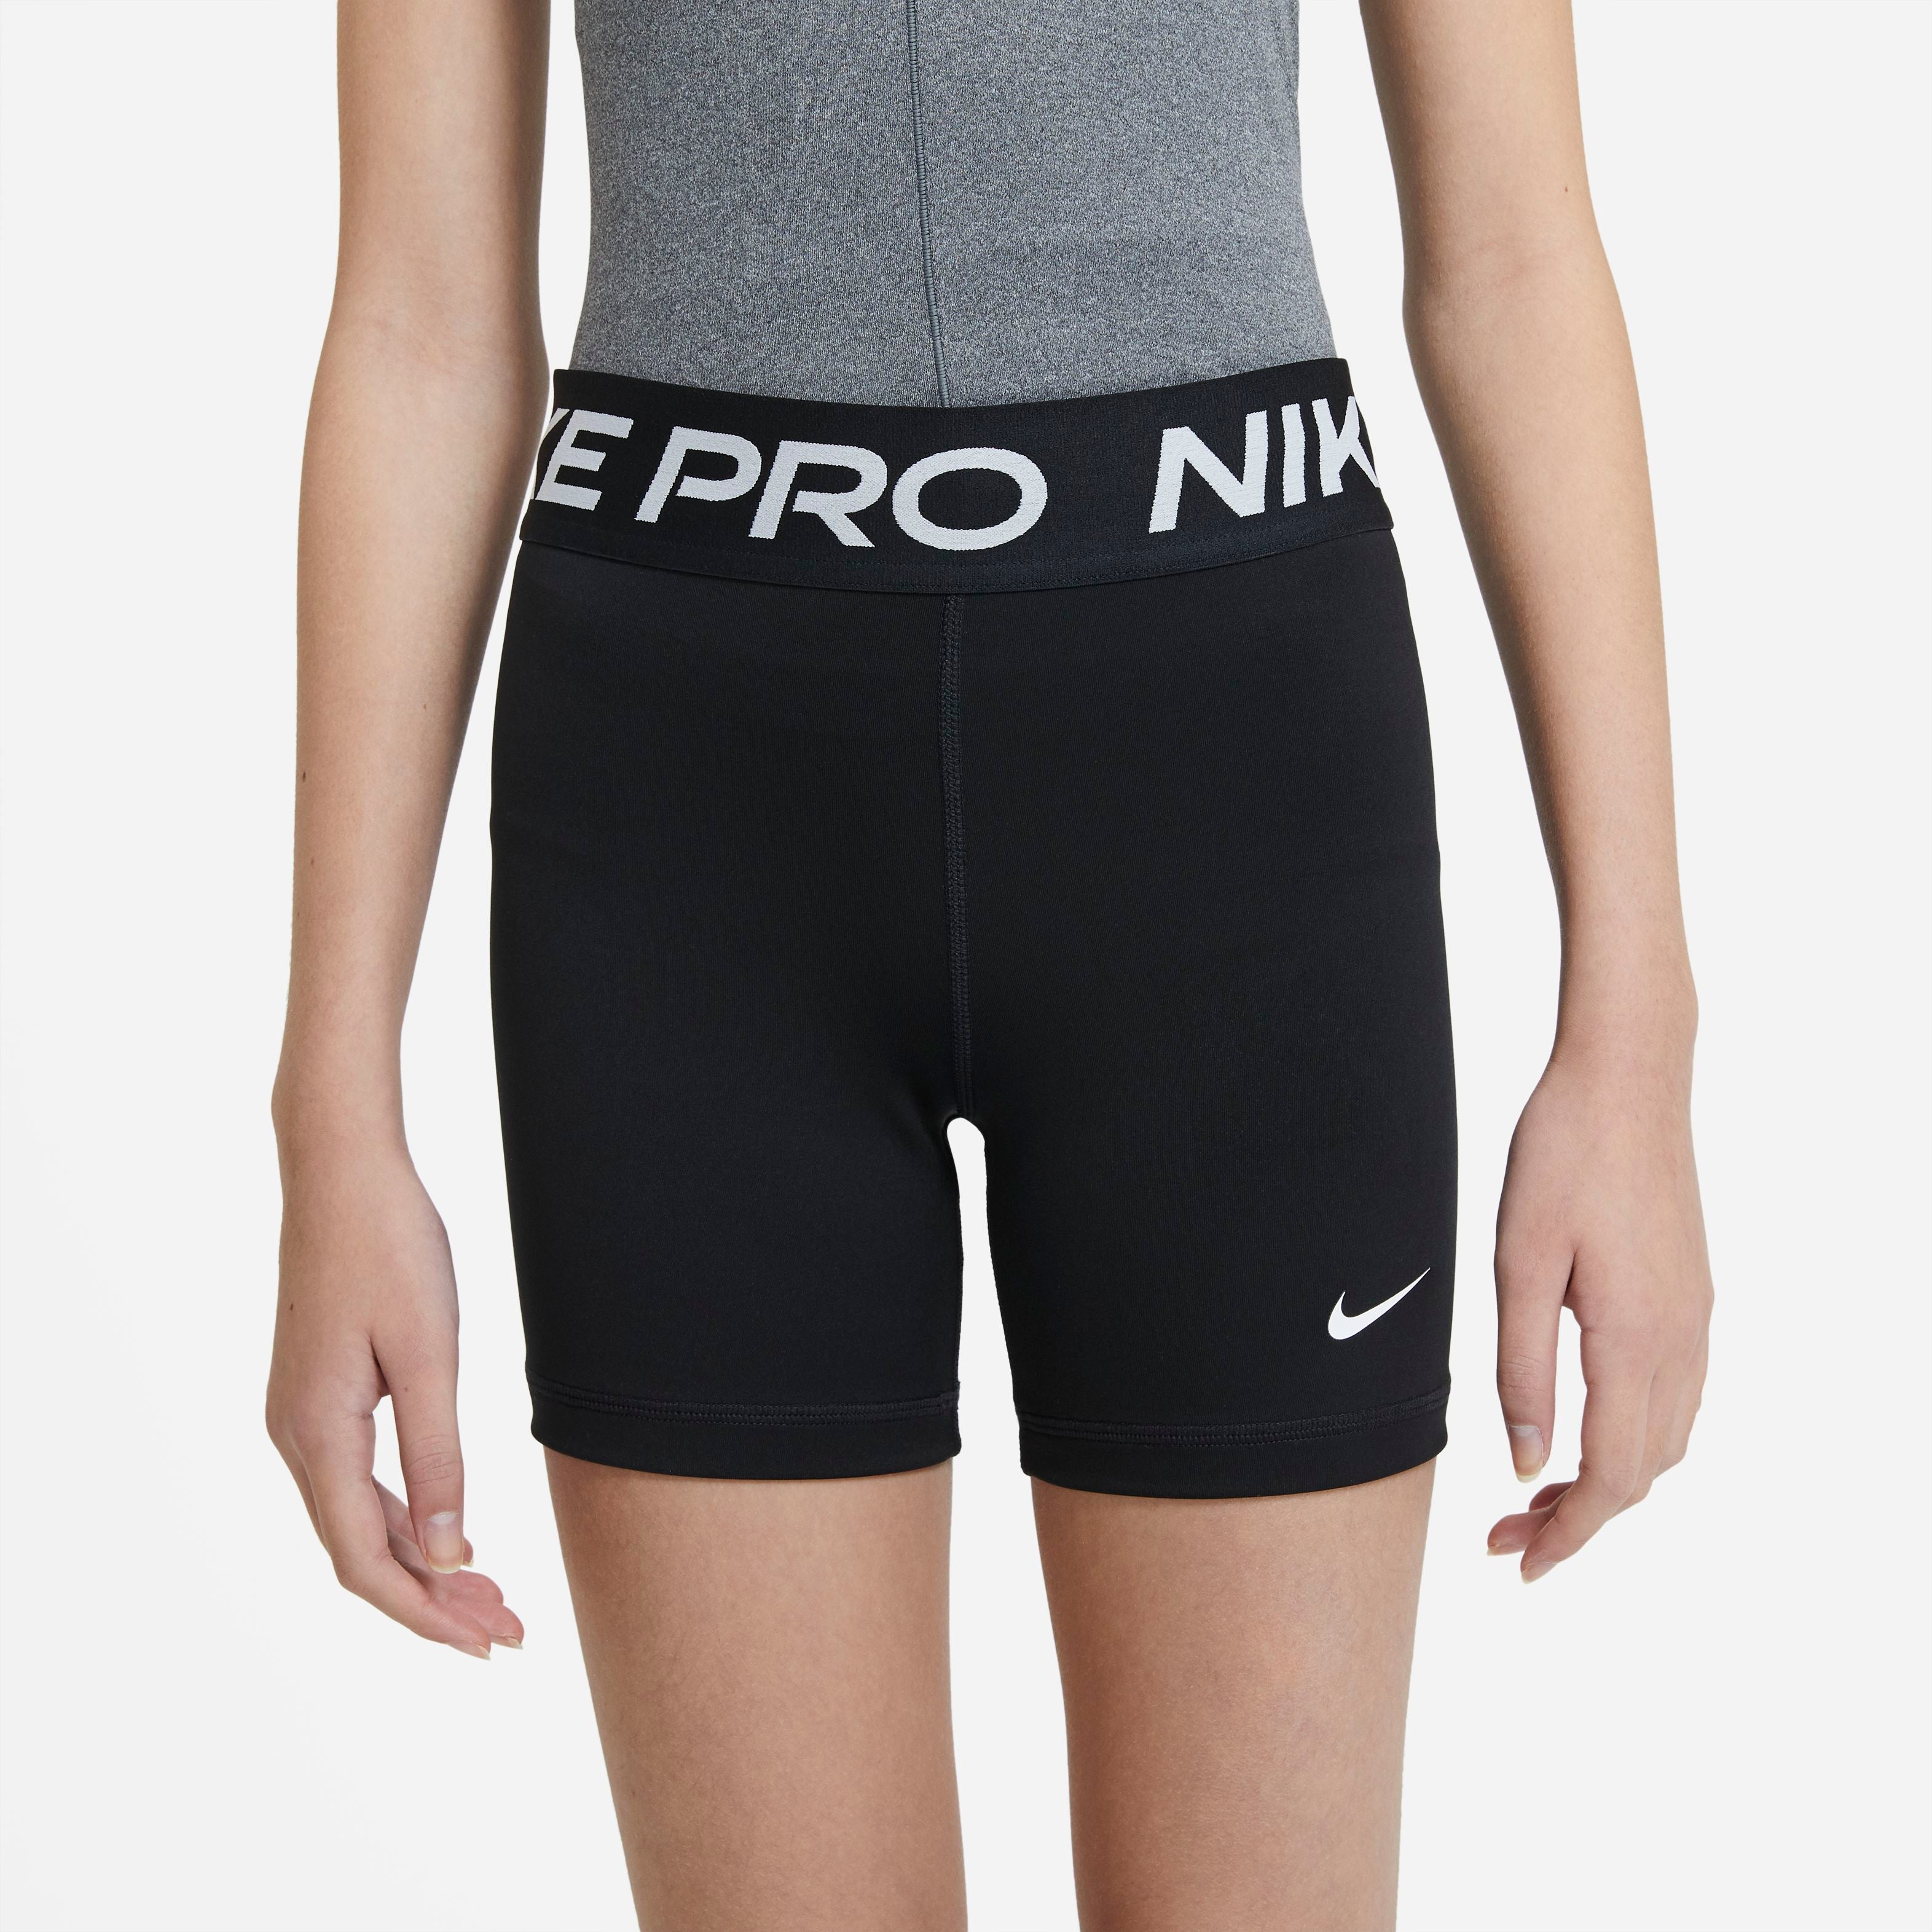 Nike Boys' Pro Dri-Fit Shorts, Medium, Black/White